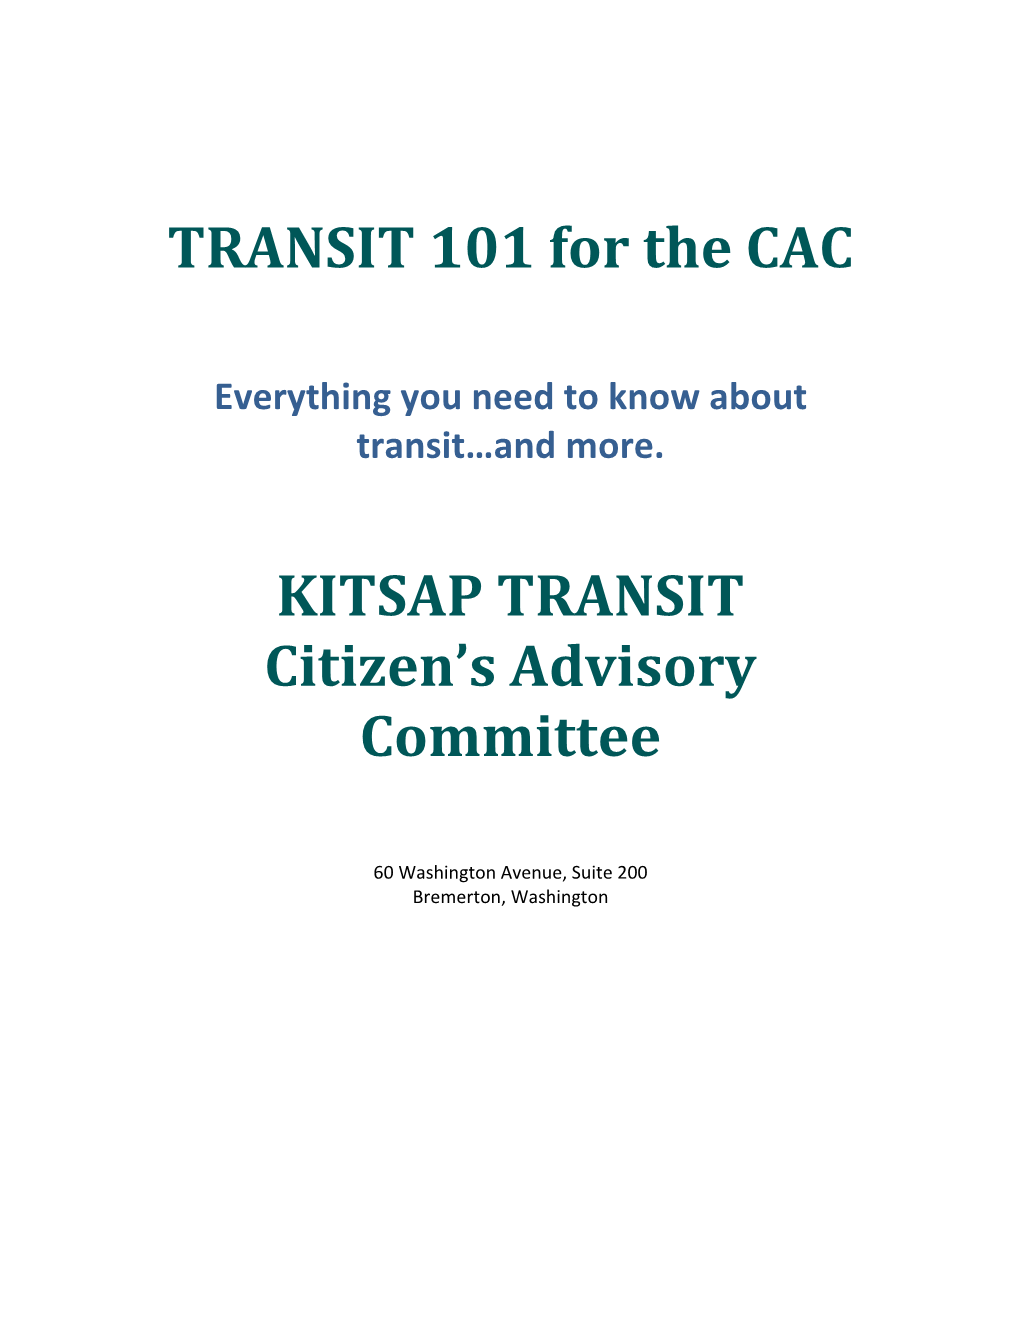 TRANSIT 101 for the CAC KITSAP TRANSIT Citizen's Advisory